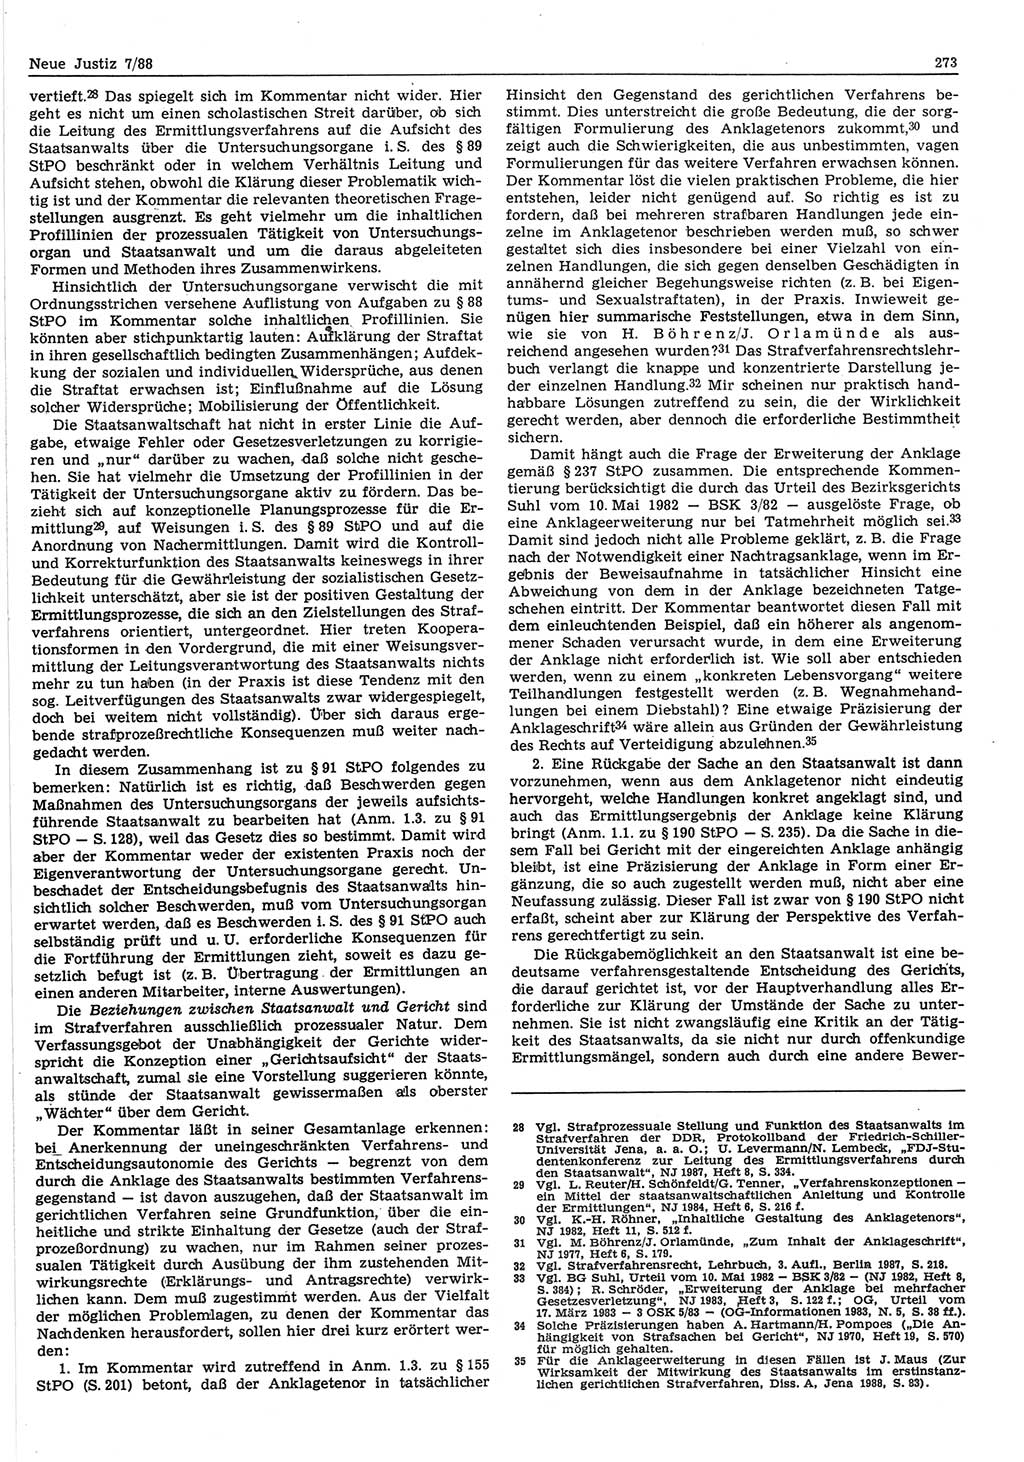 Neue Justiz (NJ), Zeitschrift für sozialistisches Recht und Gesetzlichkeit [Deutsche Demokratische Republik (DDR)], 42. Jahrgang 1988, Seite 273 (NJ DDR 1988, S. 273)